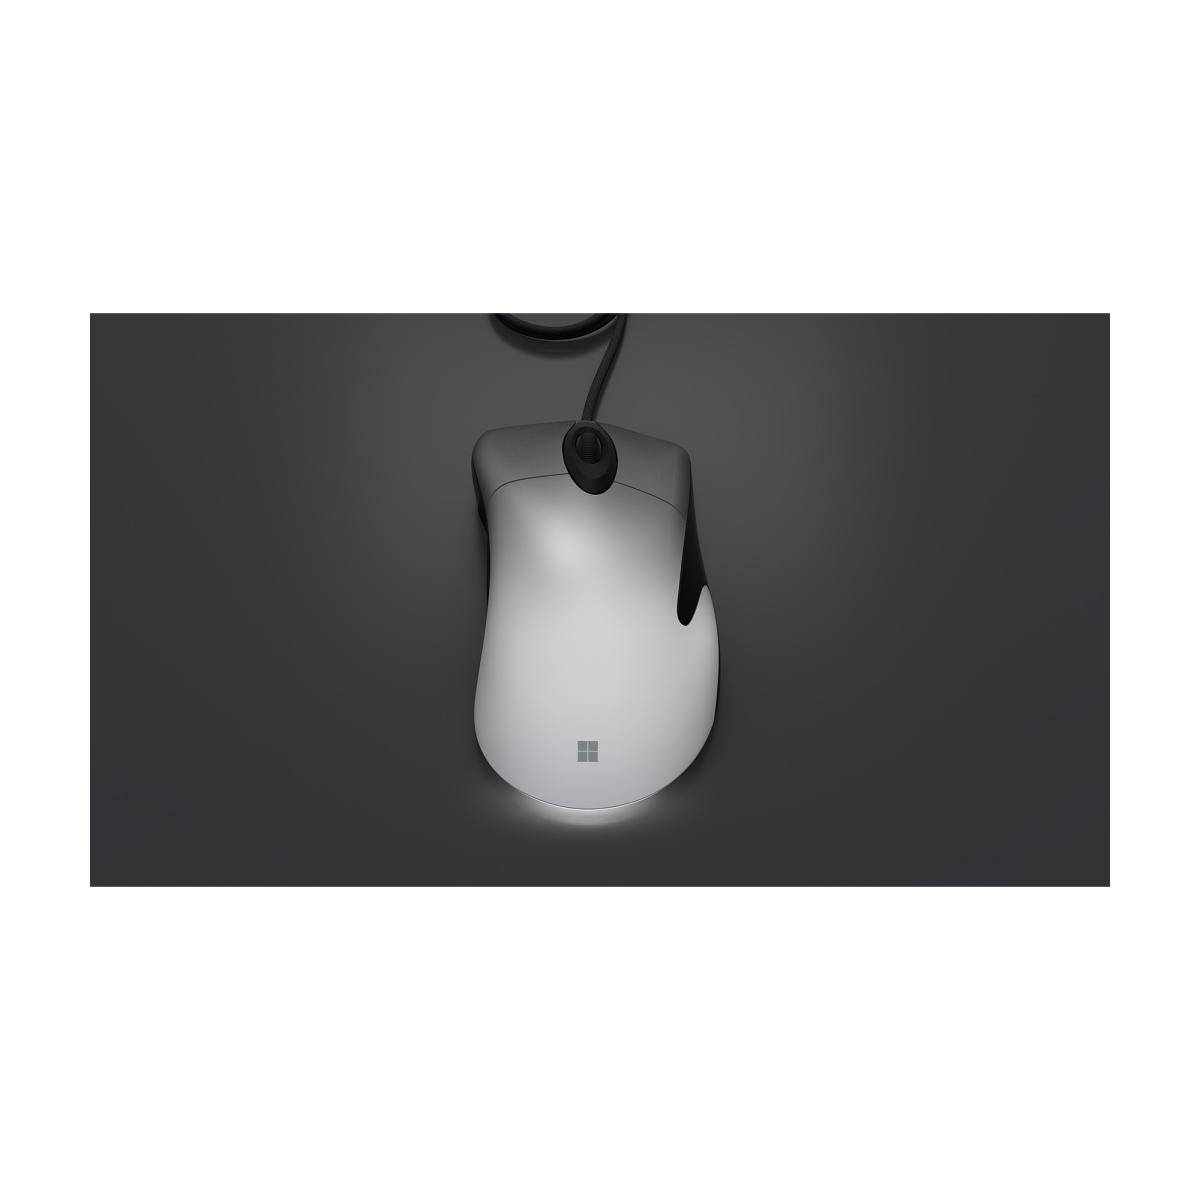 マイクロソフト プロ インテリジェンス マウス ホワイト NGX-00008